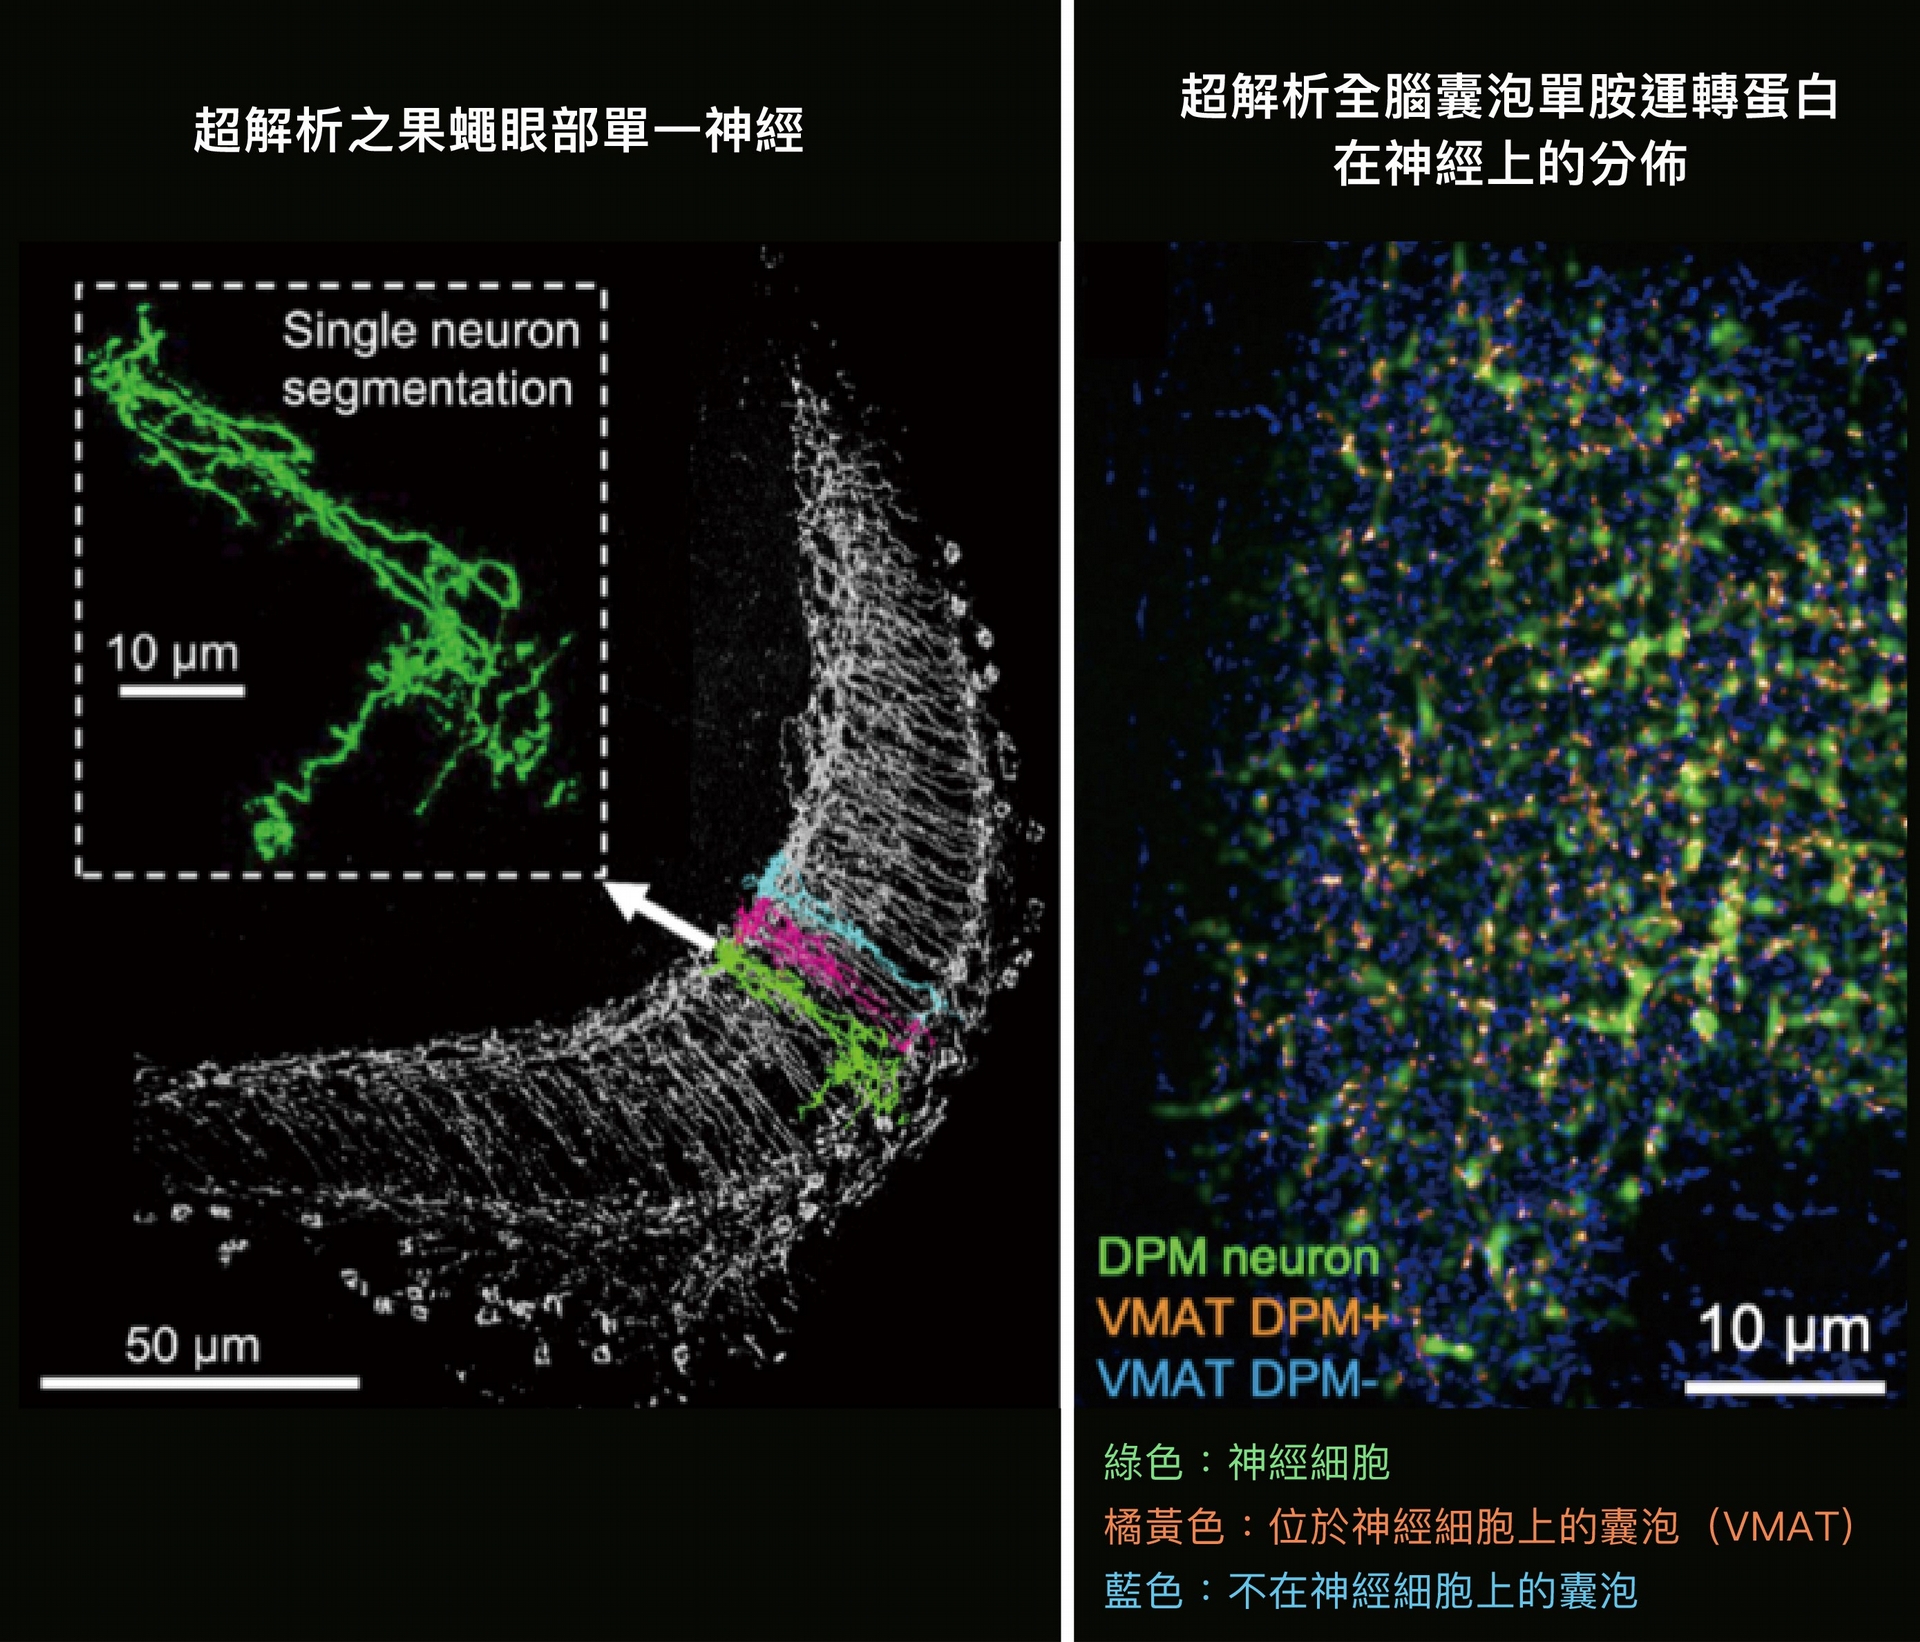 左圖是超解析之果蠅眼部單一神經，右圖是超解析全腦囊泡單胺運轉蛋白在神經上的分佈。 圖片來源│Rapid single-wavelength lightsheet localization microscopy for clarified tissue 